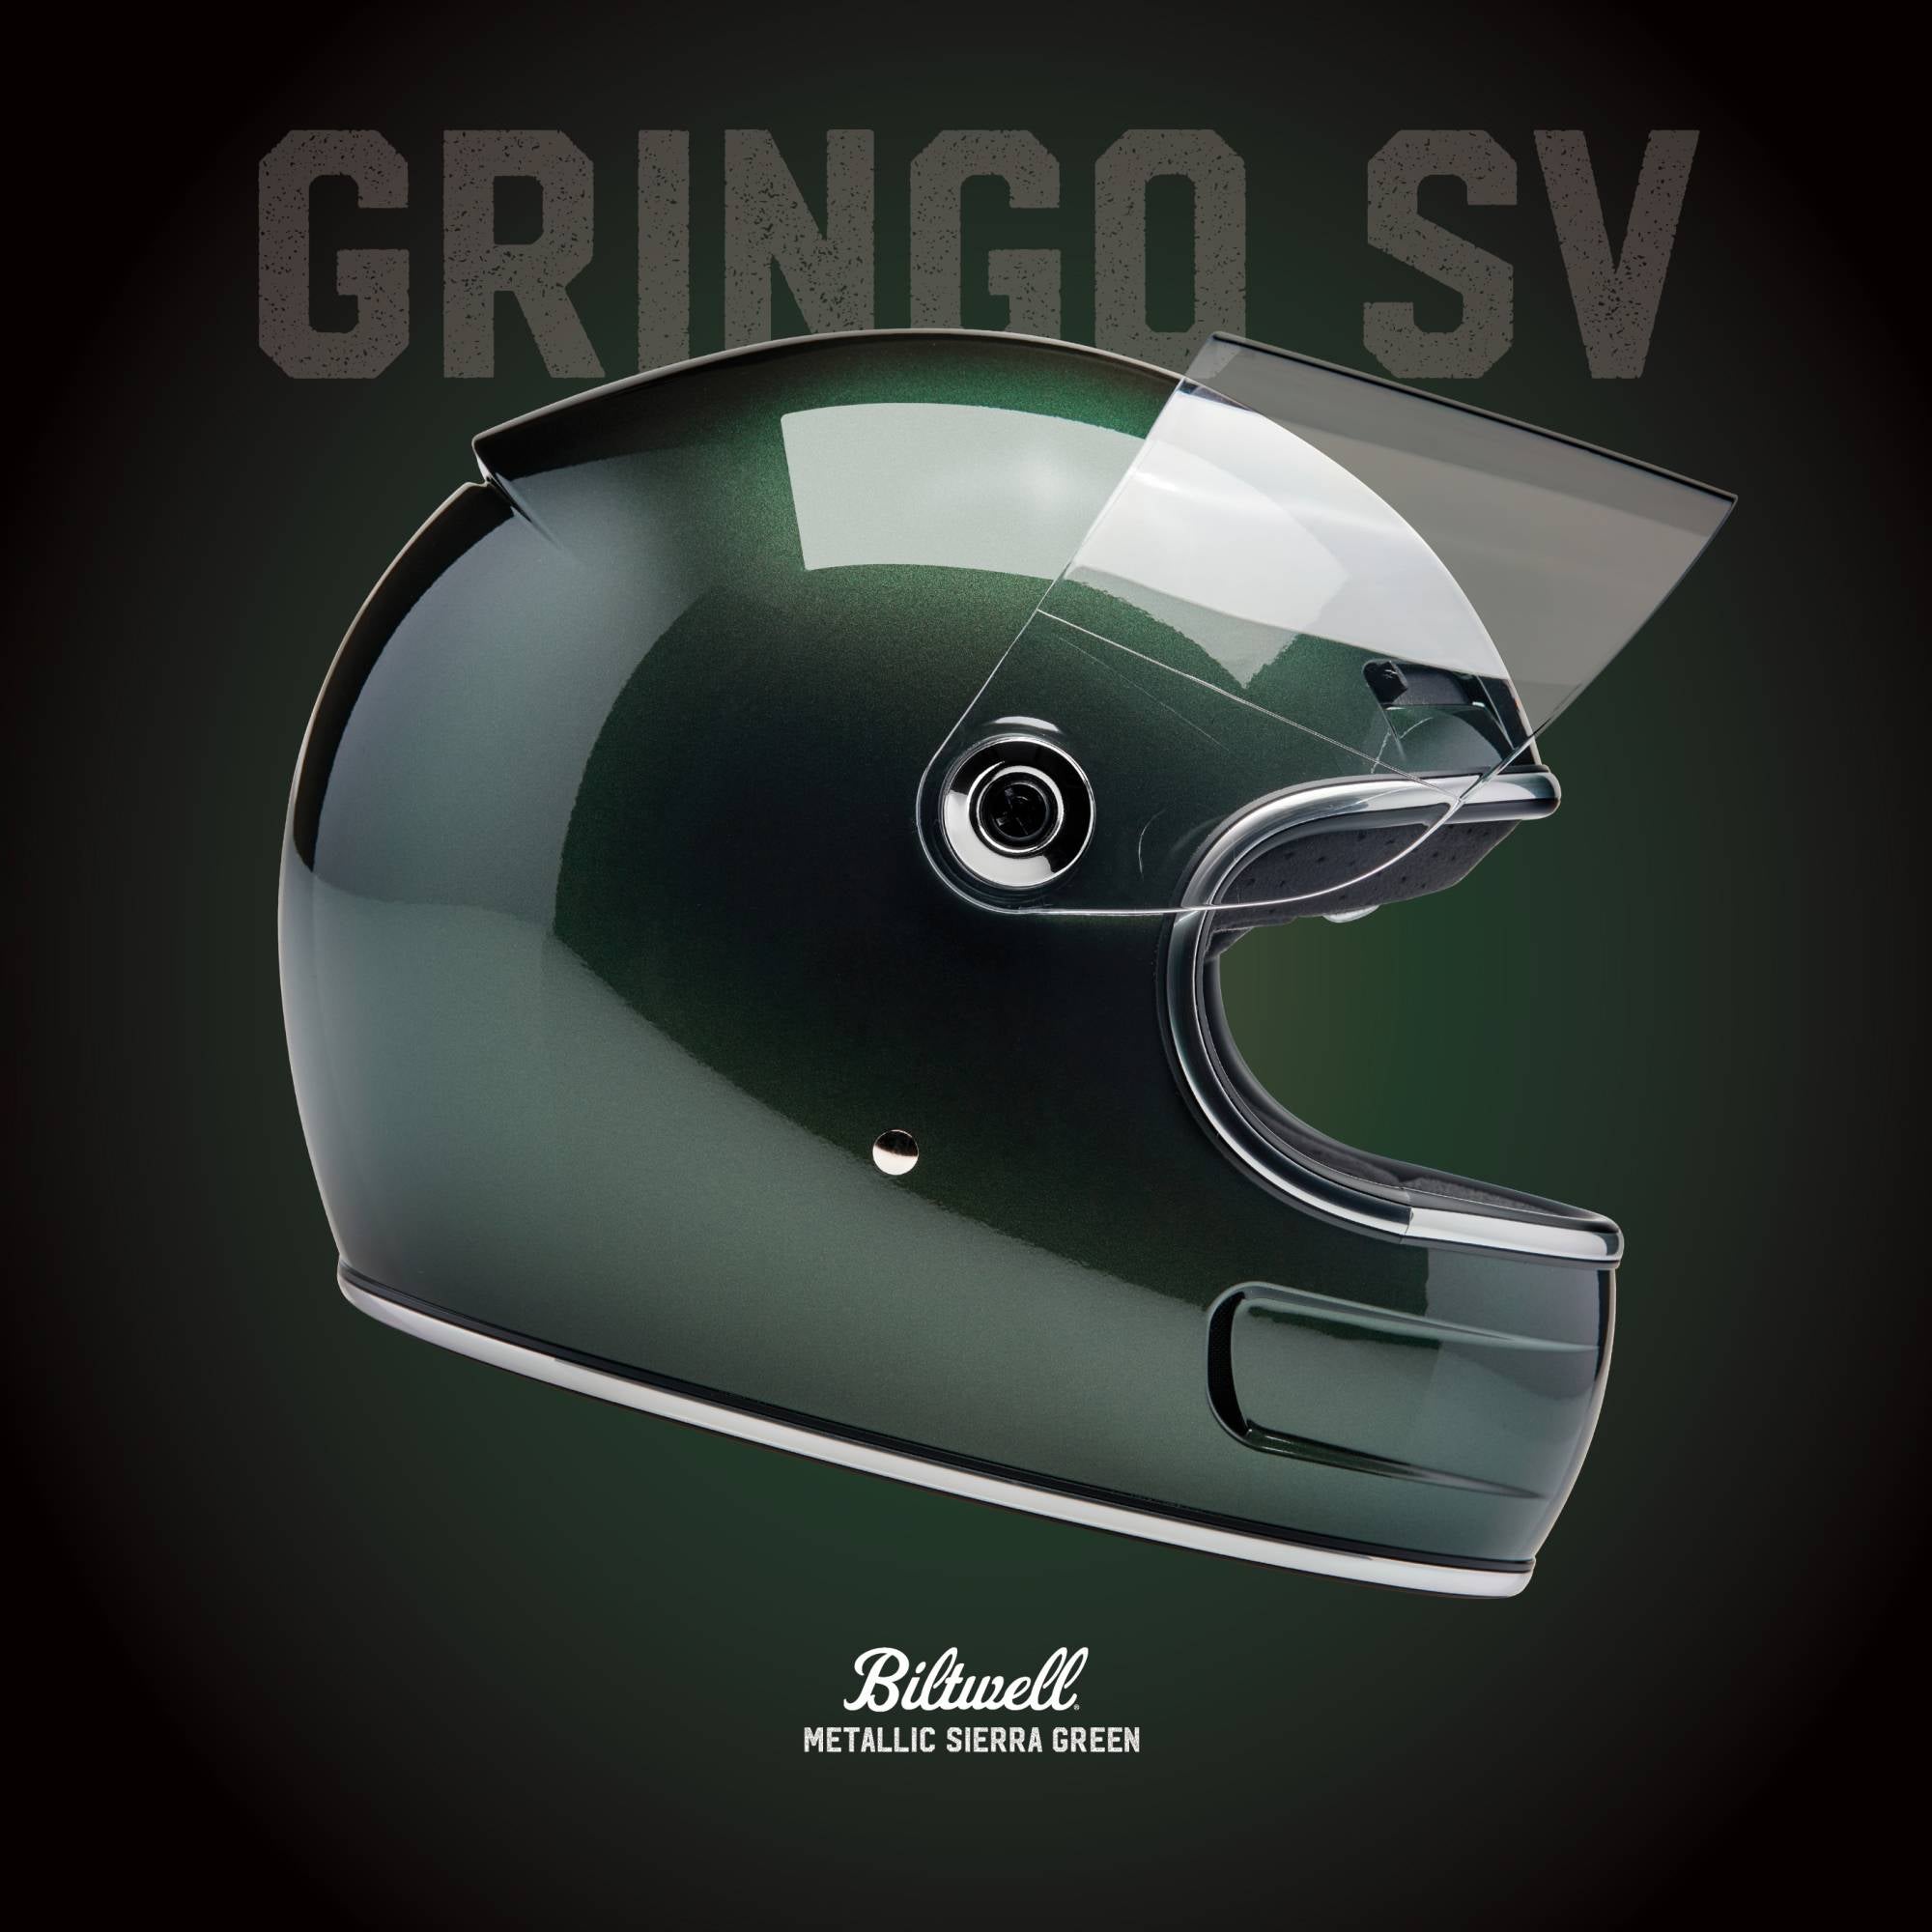 Gringo SV Helmet Metallic Sierra Green